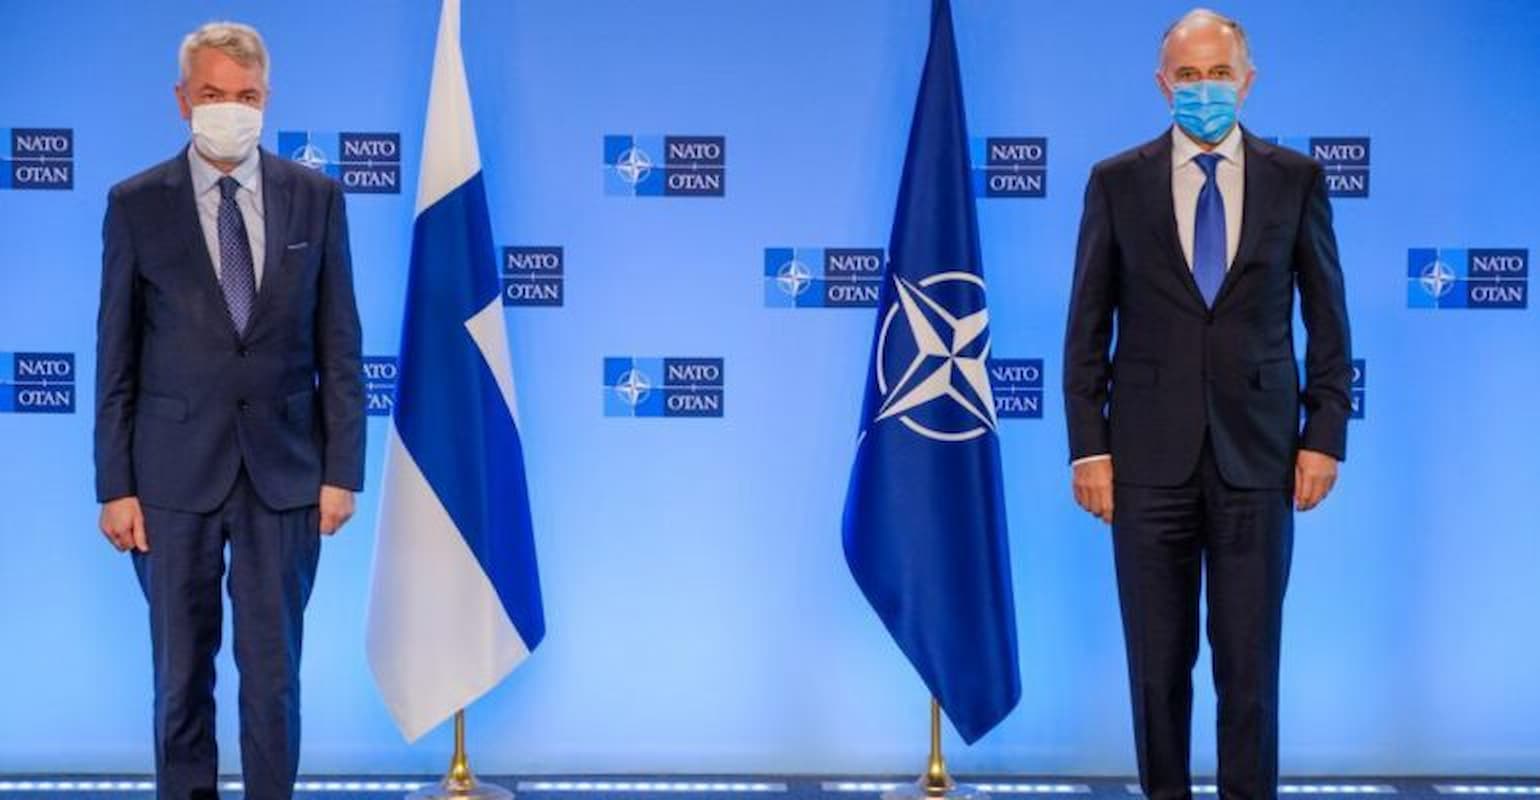 NATO in Finland